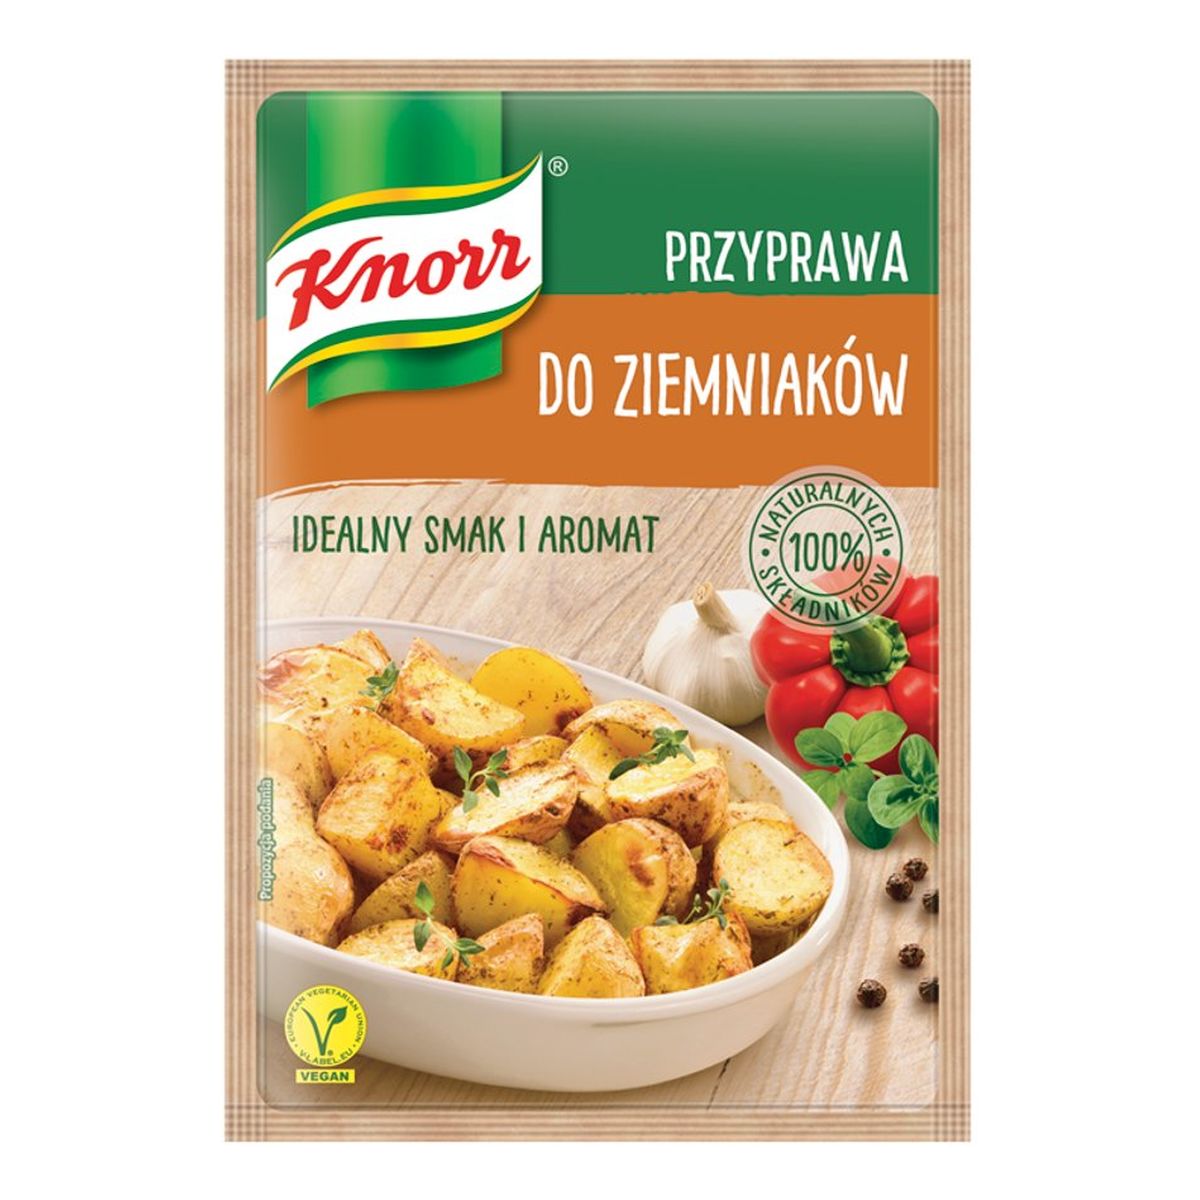 Knorr przyprawa do ziemniaków 23g